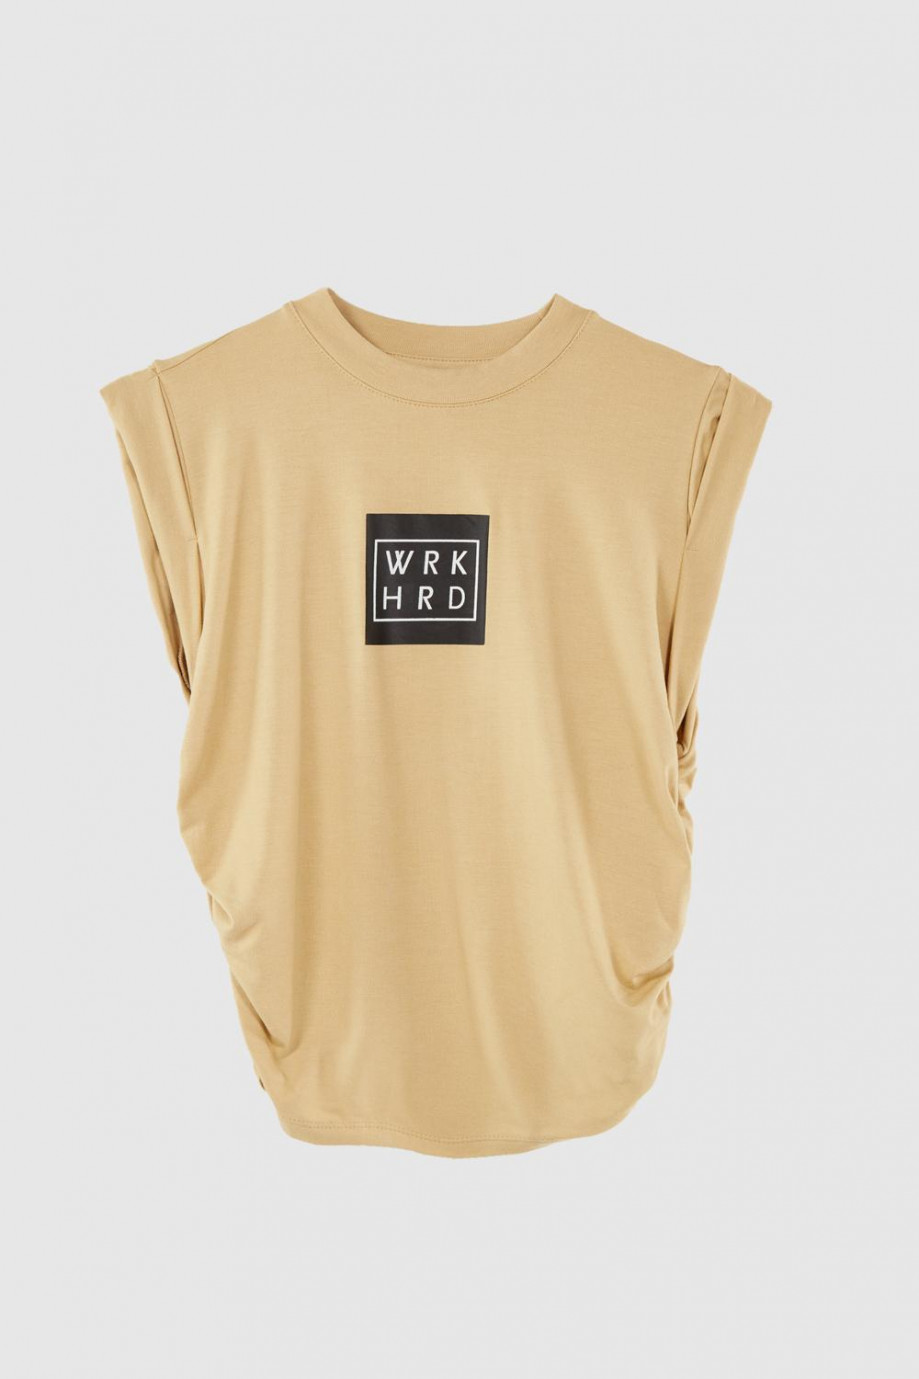 Camiseta croptop, cuello alto con elástico en costados y estampado en frente